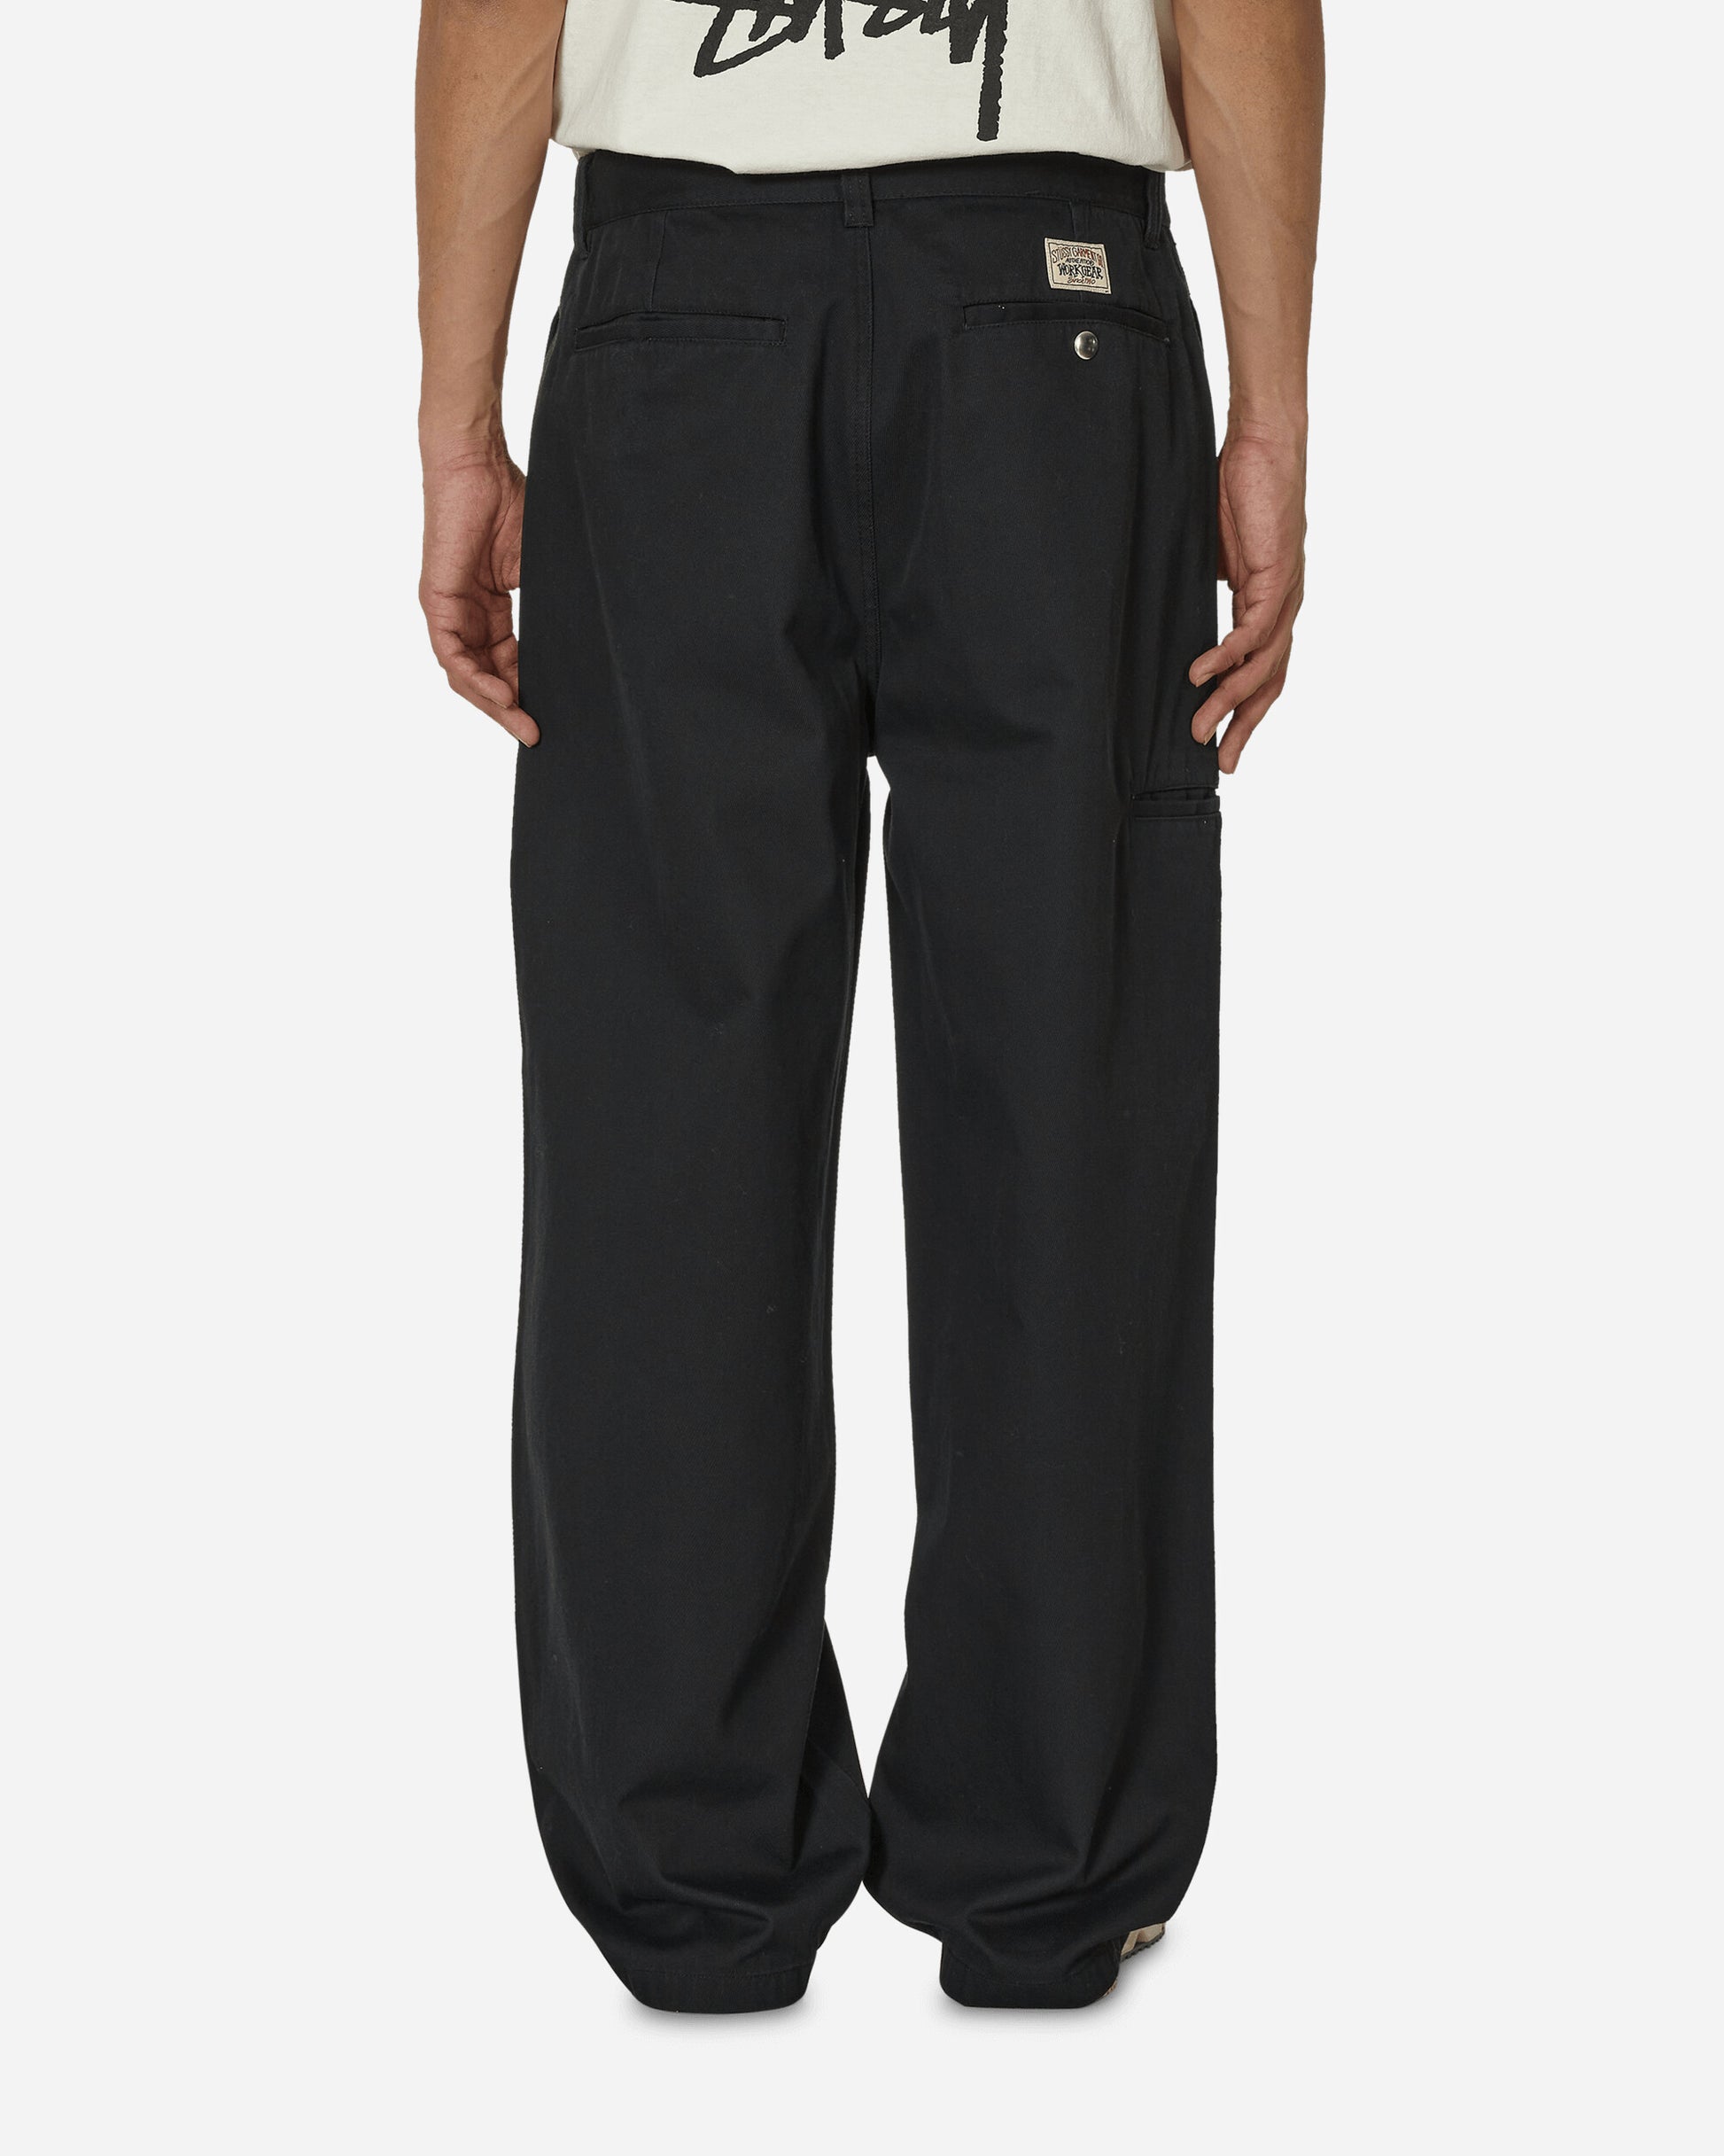 Stüssy Workgear Trouser Twill Black Pants Casual 116625 0001